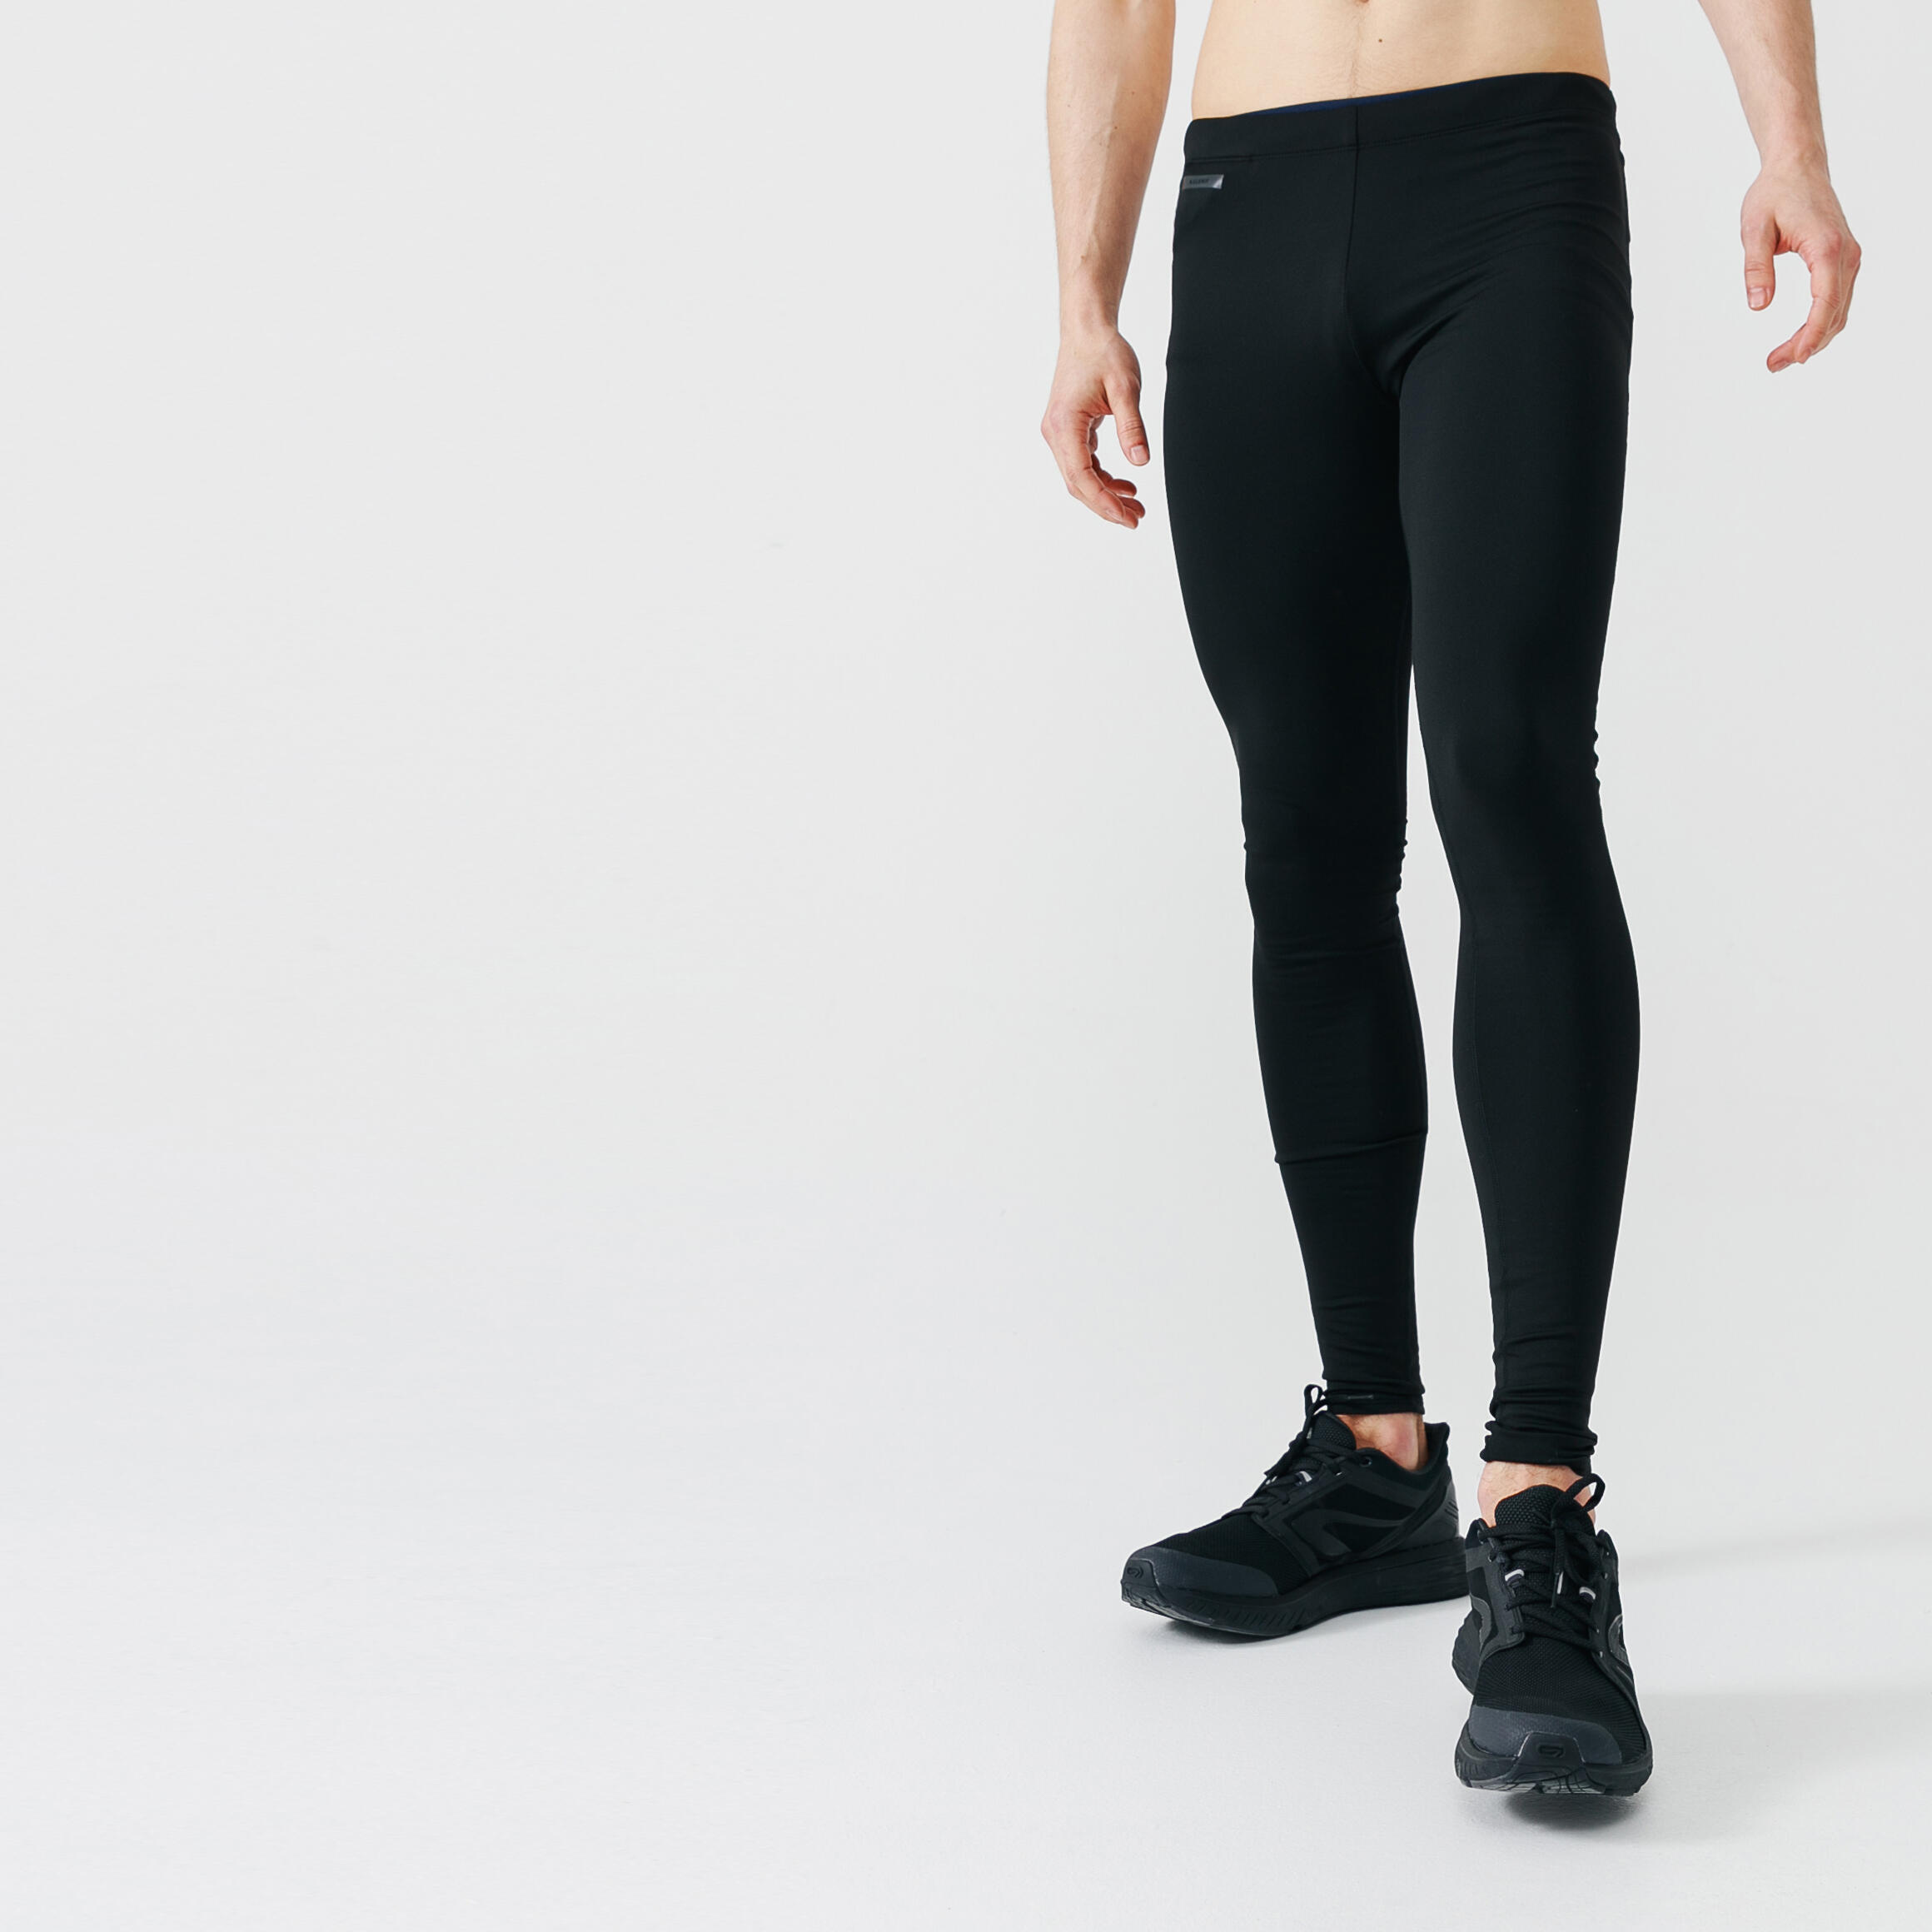 Women's Cardio Fitness High-Waisted Shaping Short Leggings - Black